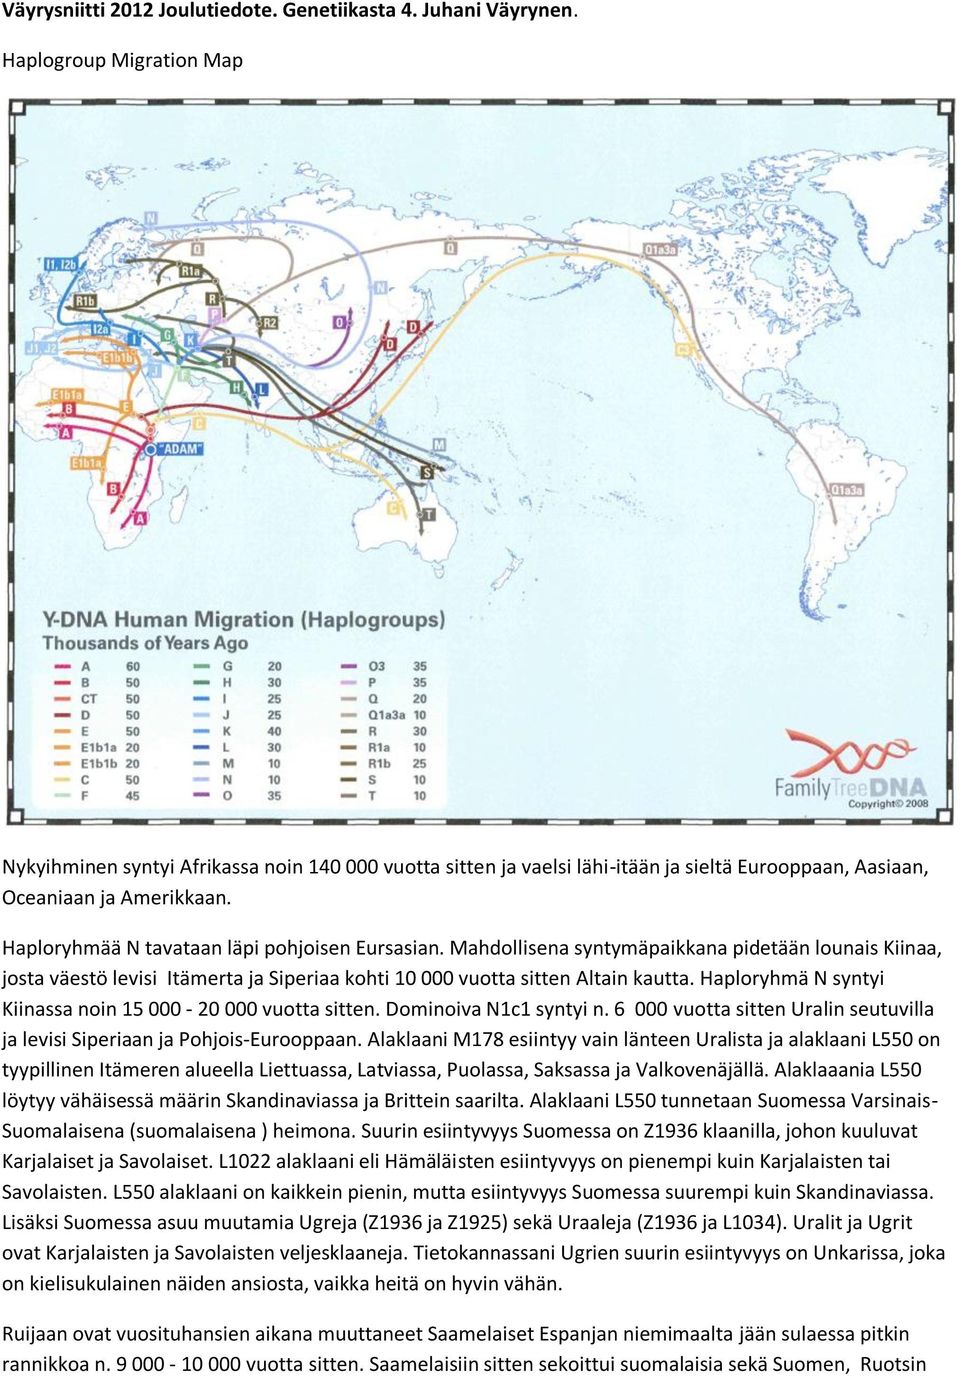 Haploryhmää N tavataan läpi pohjoisen Eursasian. Mahdollisena syntymäpaikkana pidetään lounais Kiinaa, josta väestö levisi Itämerta ja Siperiaa kohti 10 000 vuotta sitten Altain kautta.